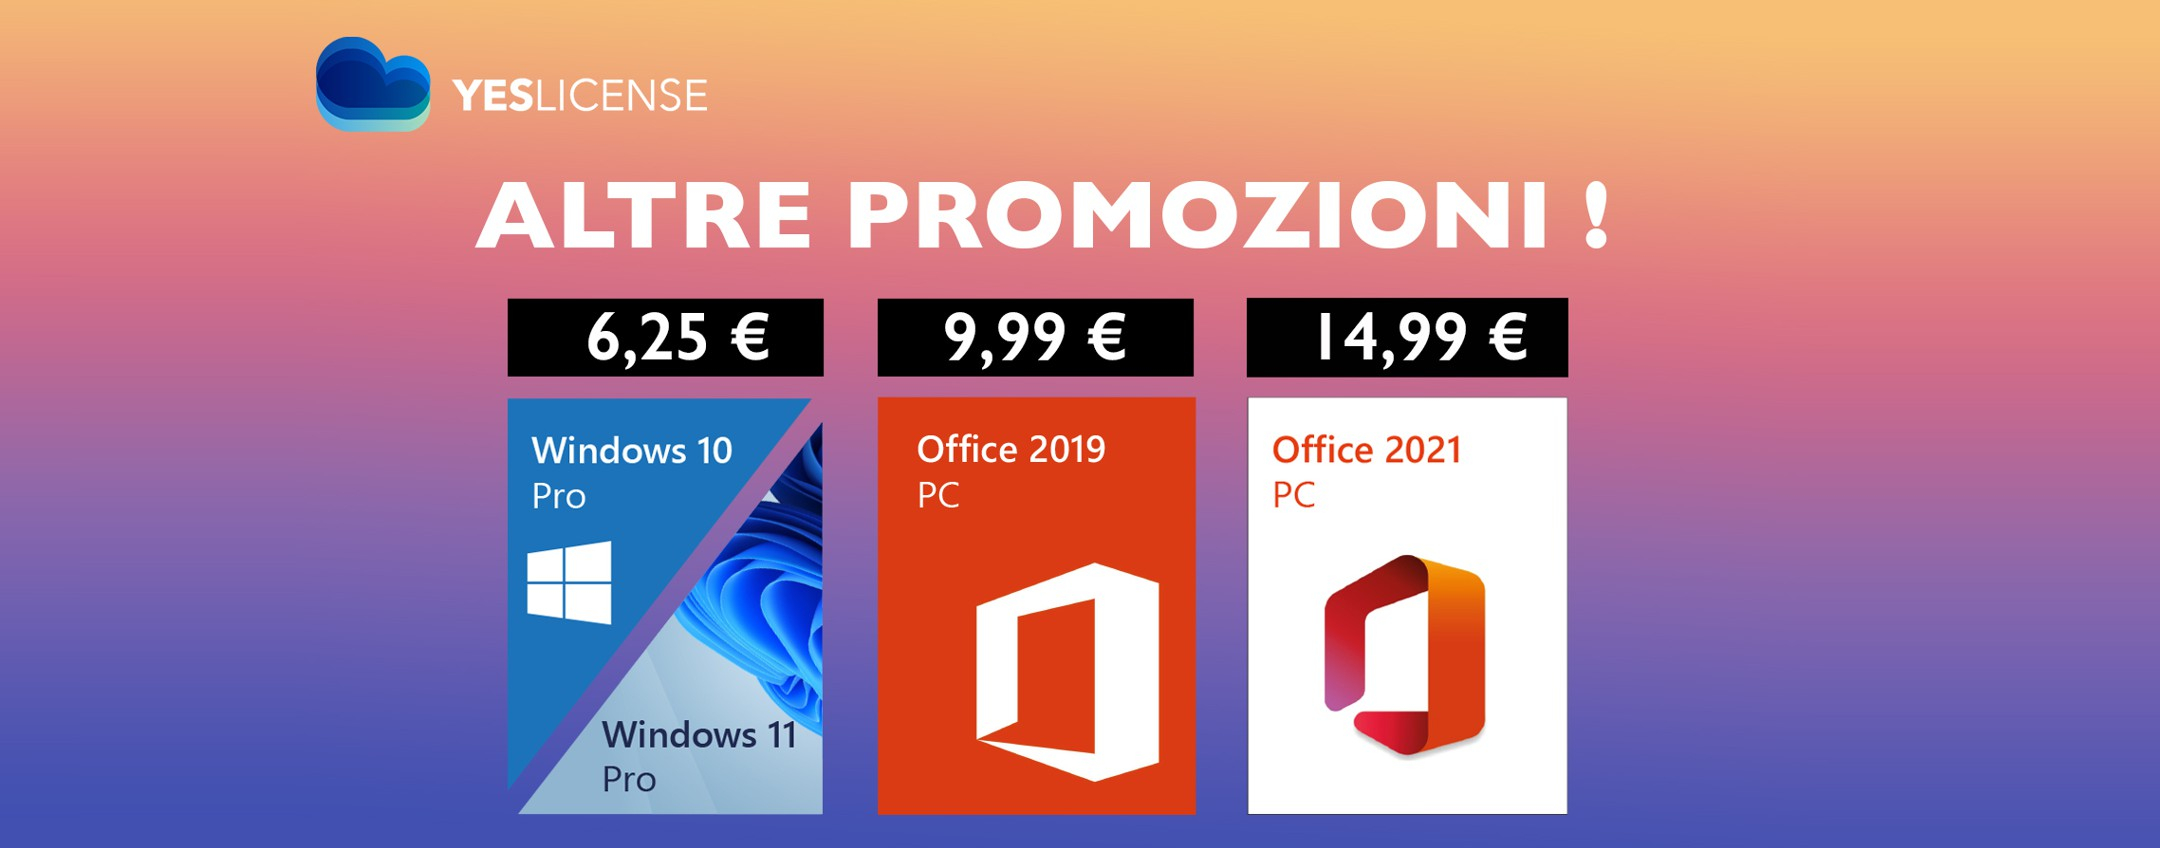 Windows 11 Pro, licenza a soli 6,25€: si può, con YesLicense